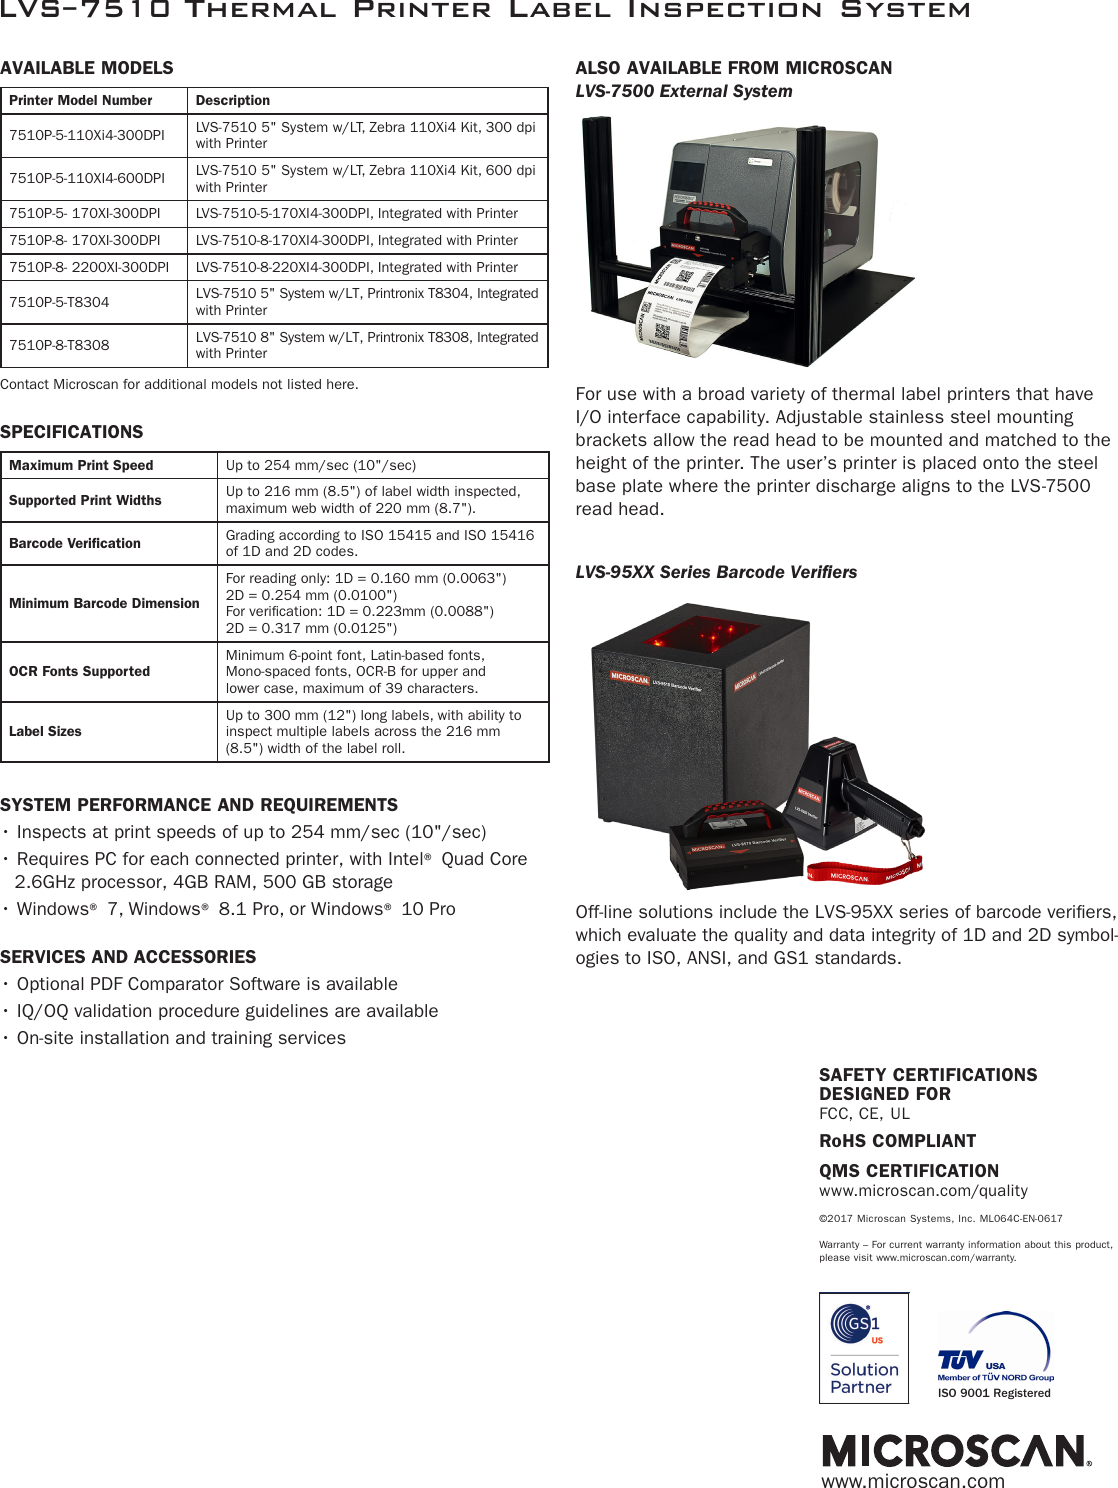 Page 4 of 4 - LVS-7510 Thermal Printer Label Inspection System  Lvs-7510-brochure.en